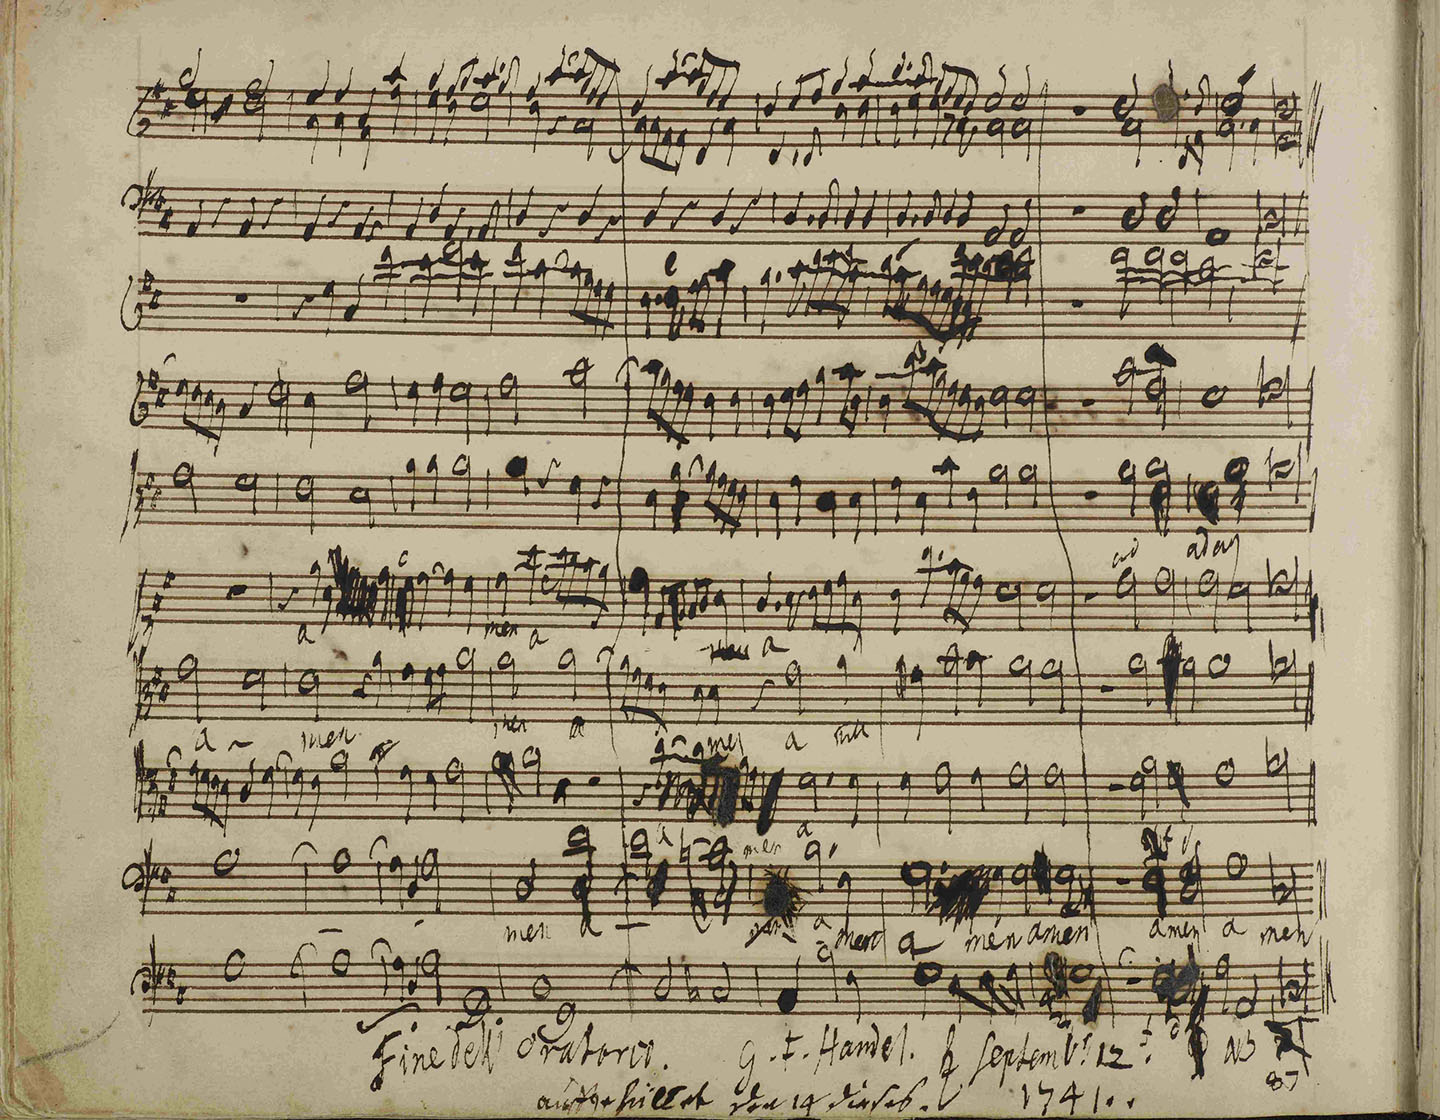 Một trang trong bản thảo sáng tác bài hát “Messiah” của nhà soạn nhạc Handel, ngày 01/01/1741. (Ảnh: Tài liệu công cộng)